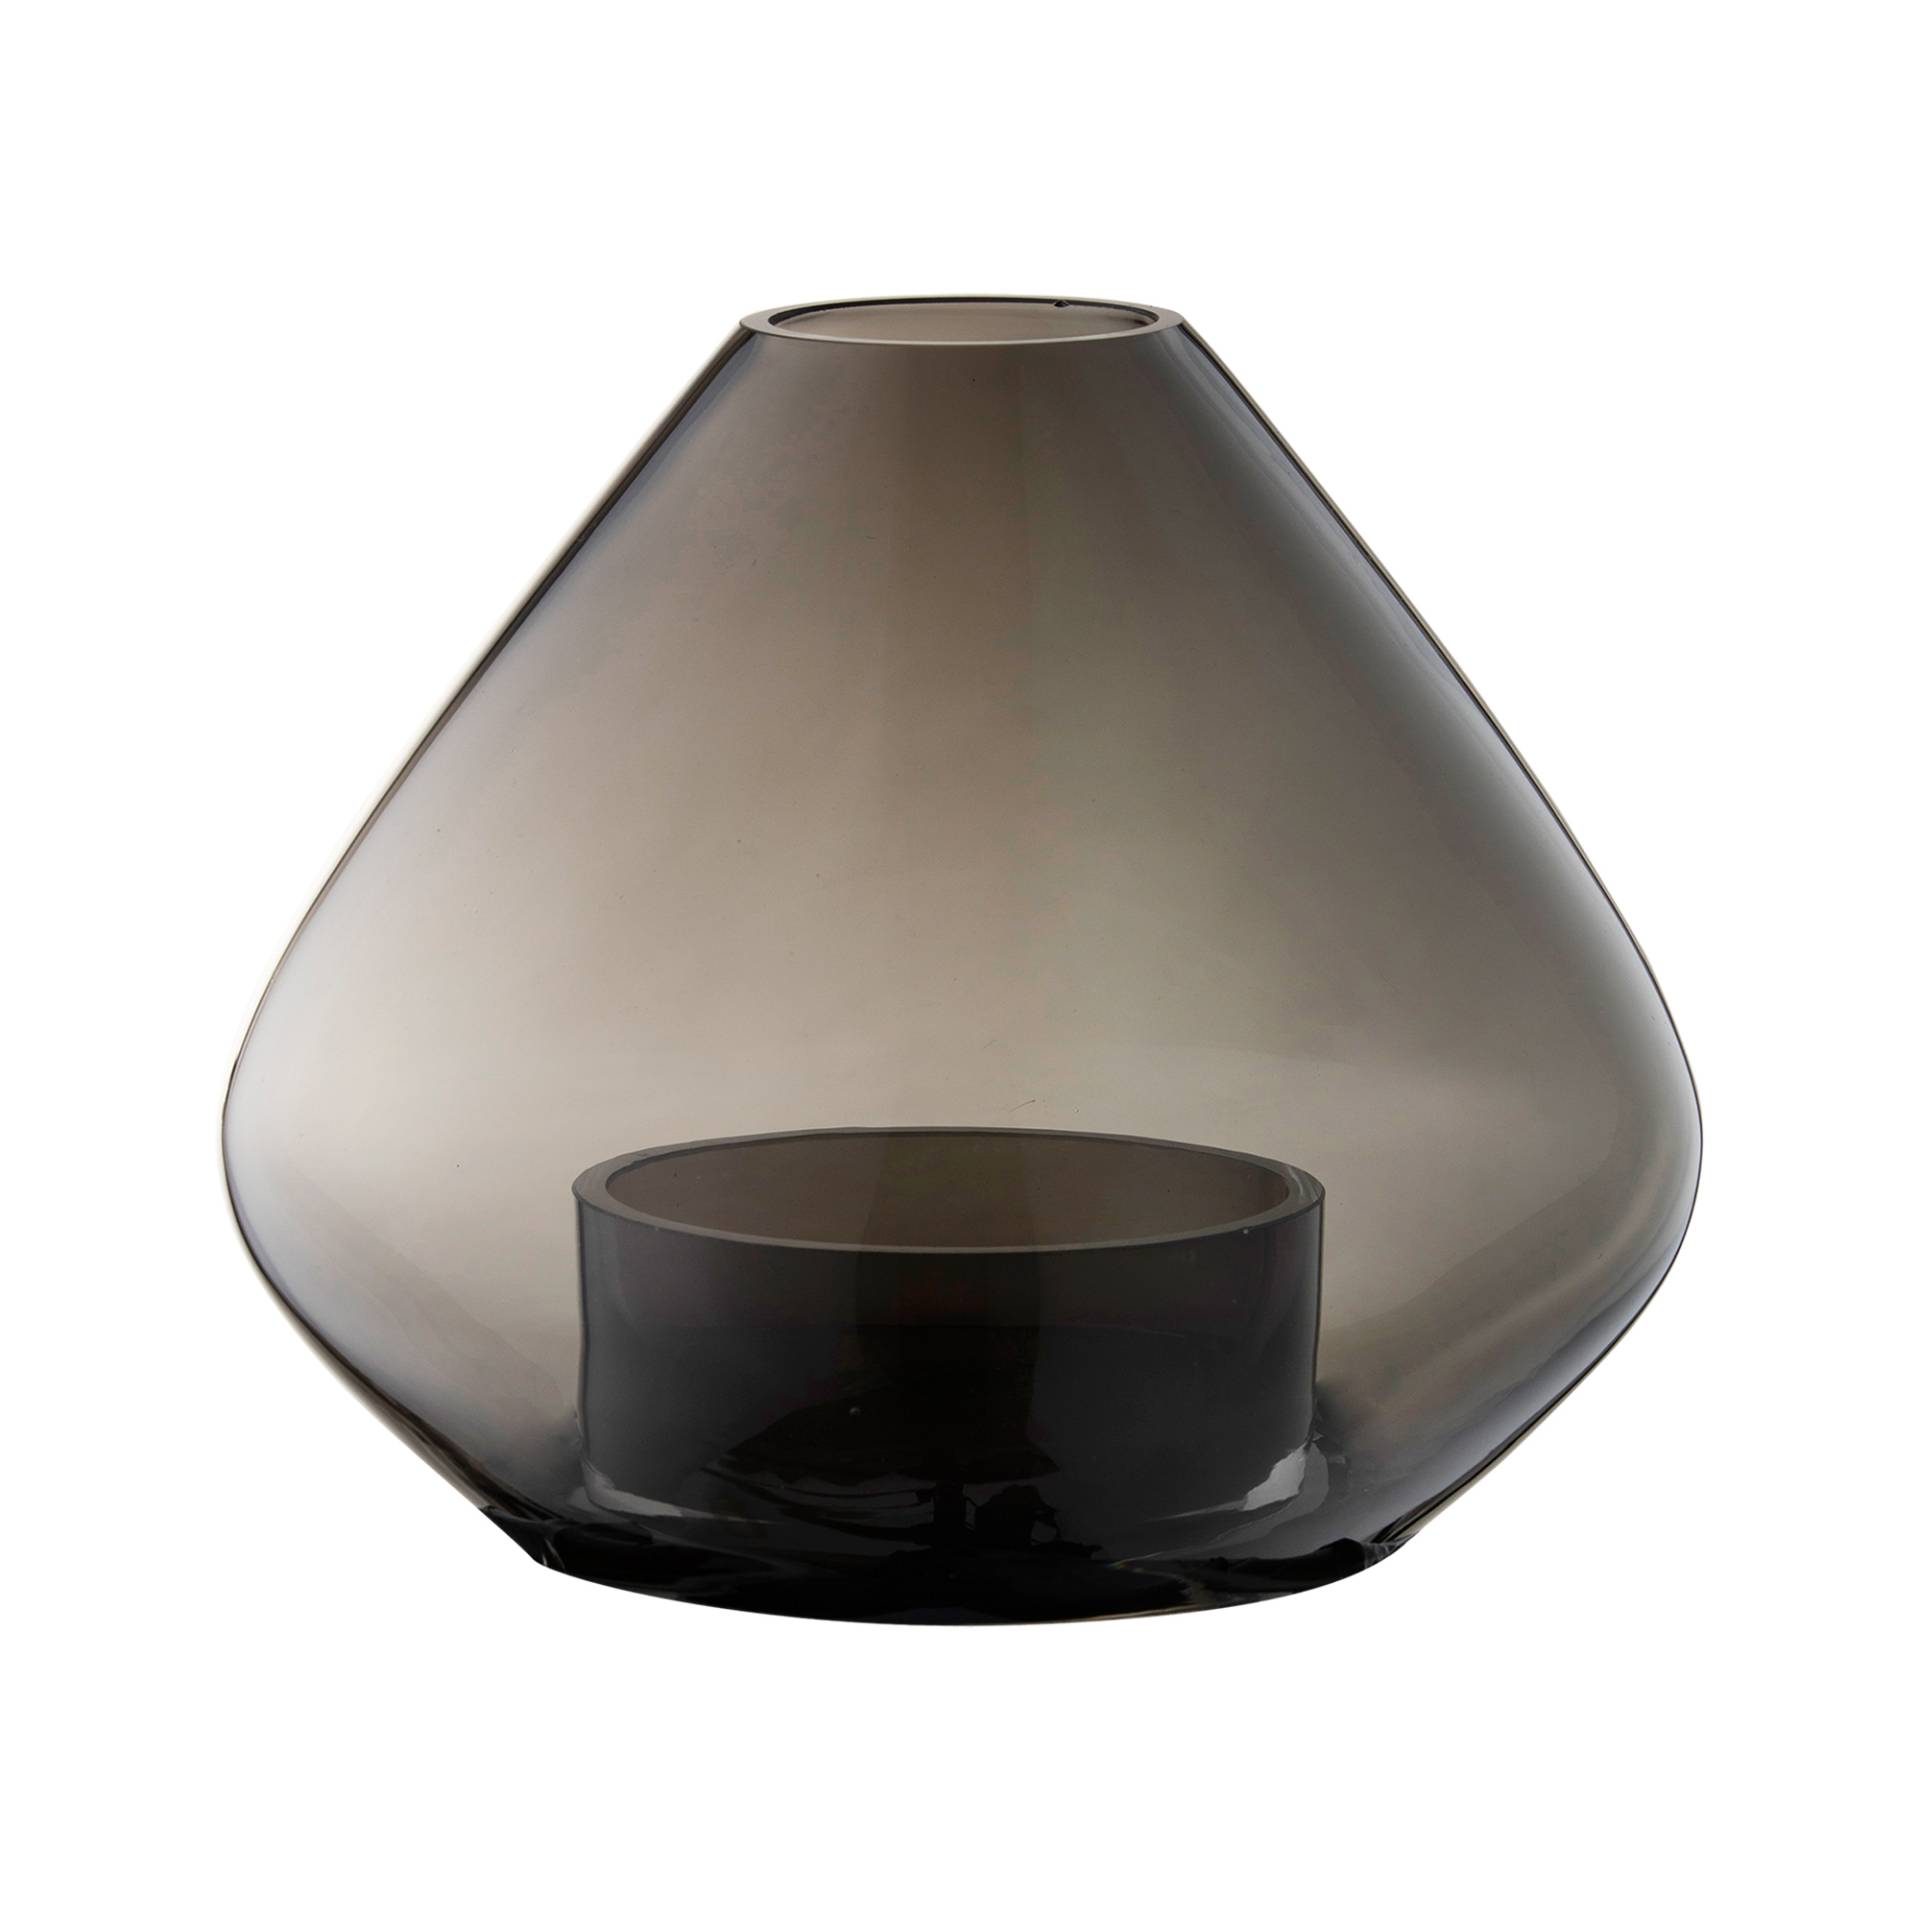 AYTM - Uno Windlicht/Vase Ø 25,9cm - schwarz/H 21cm x Ø 25,9cm von AYTM